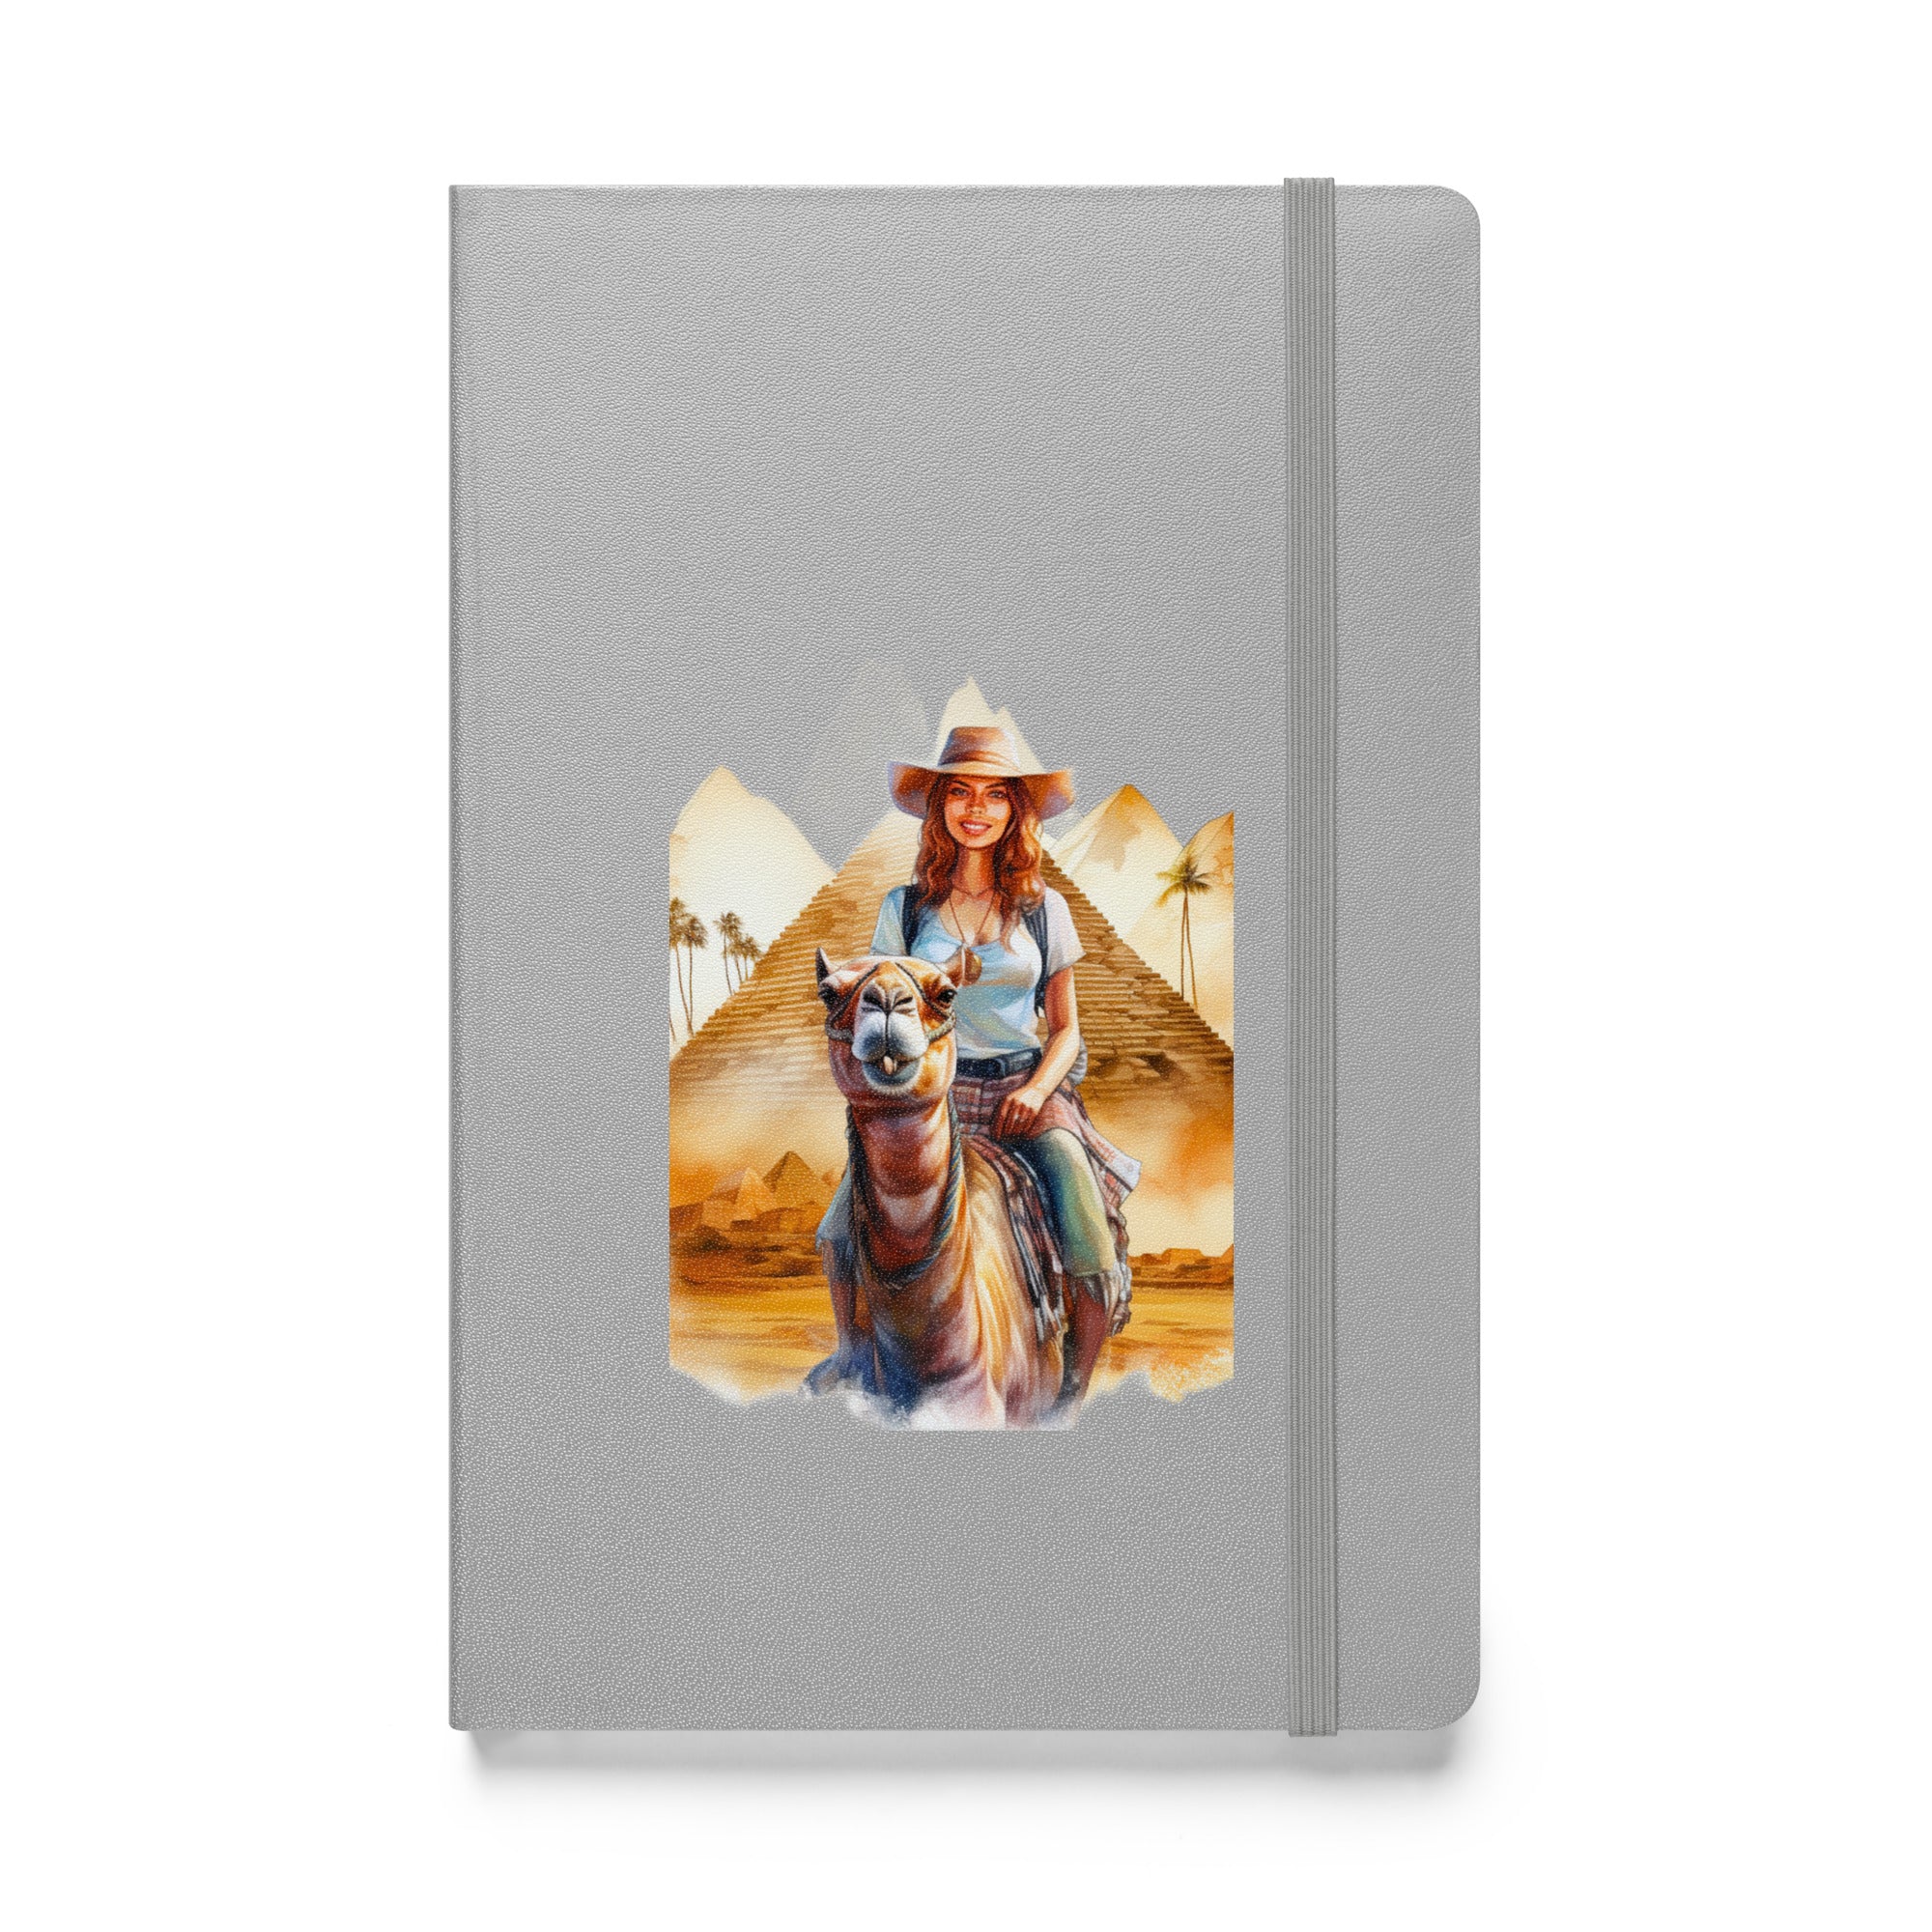 Egypt Traveler - Hardcover Notebook